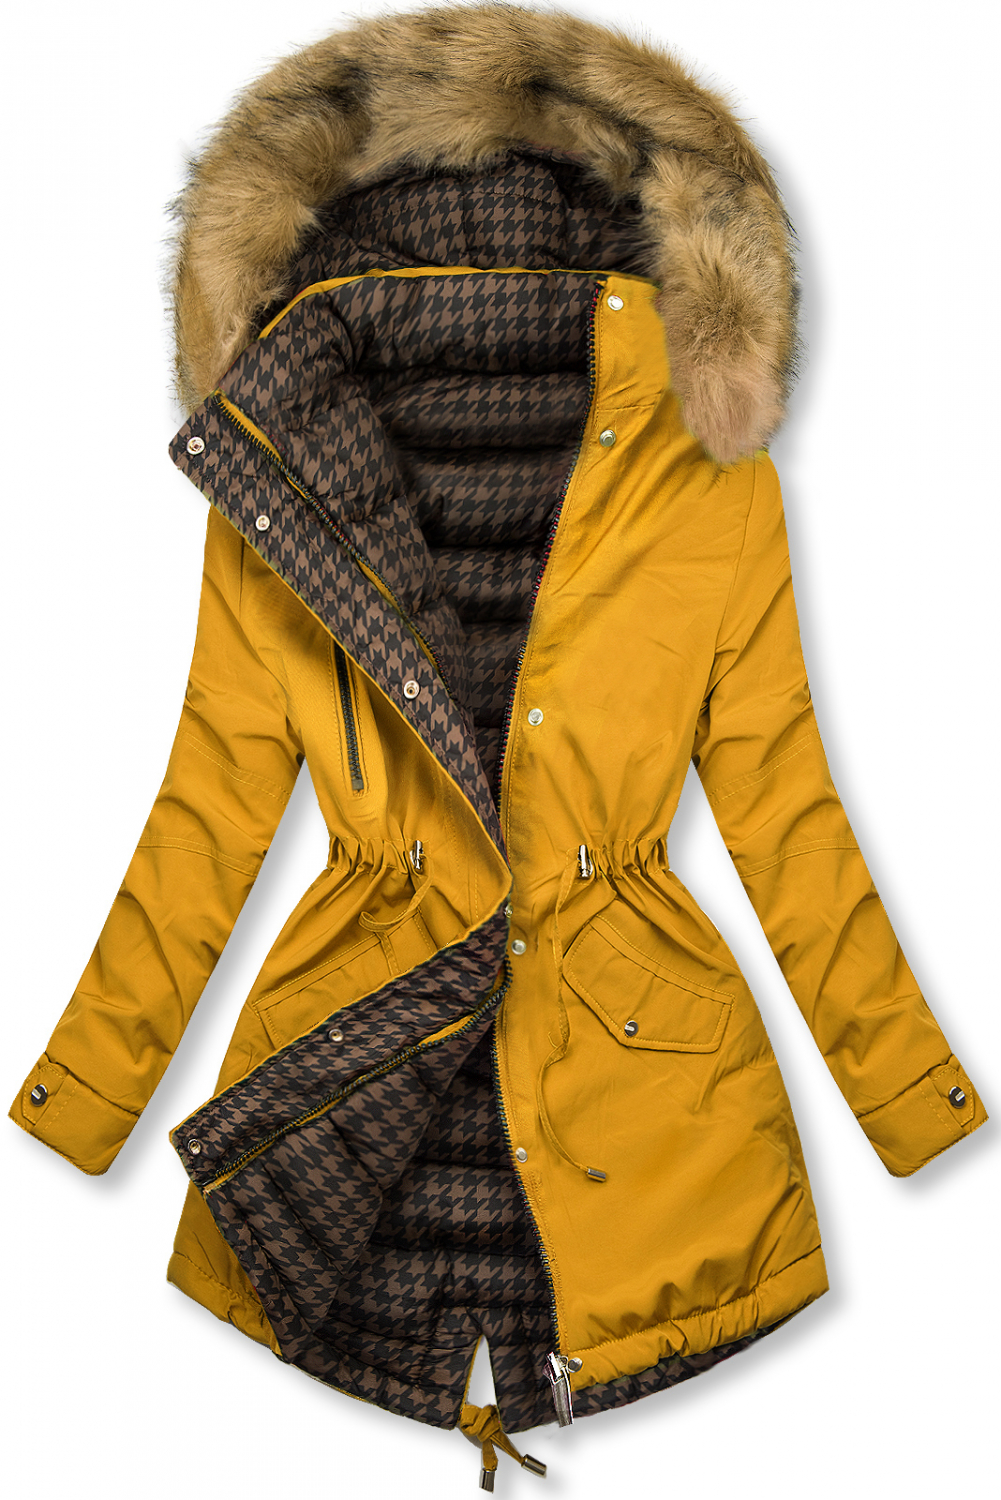 Žltá obojstranná parka na zimu.
- vyvýšený golier 
- odopínateľná kapucňa 
- odopínateľná kožušina
- zapínanie na zips a patentky
- v páse nastaviteľné sťahovanie
- dve predné vrecká 
- všetky prvky v striebornej farbe
- materiál: 100% polyester